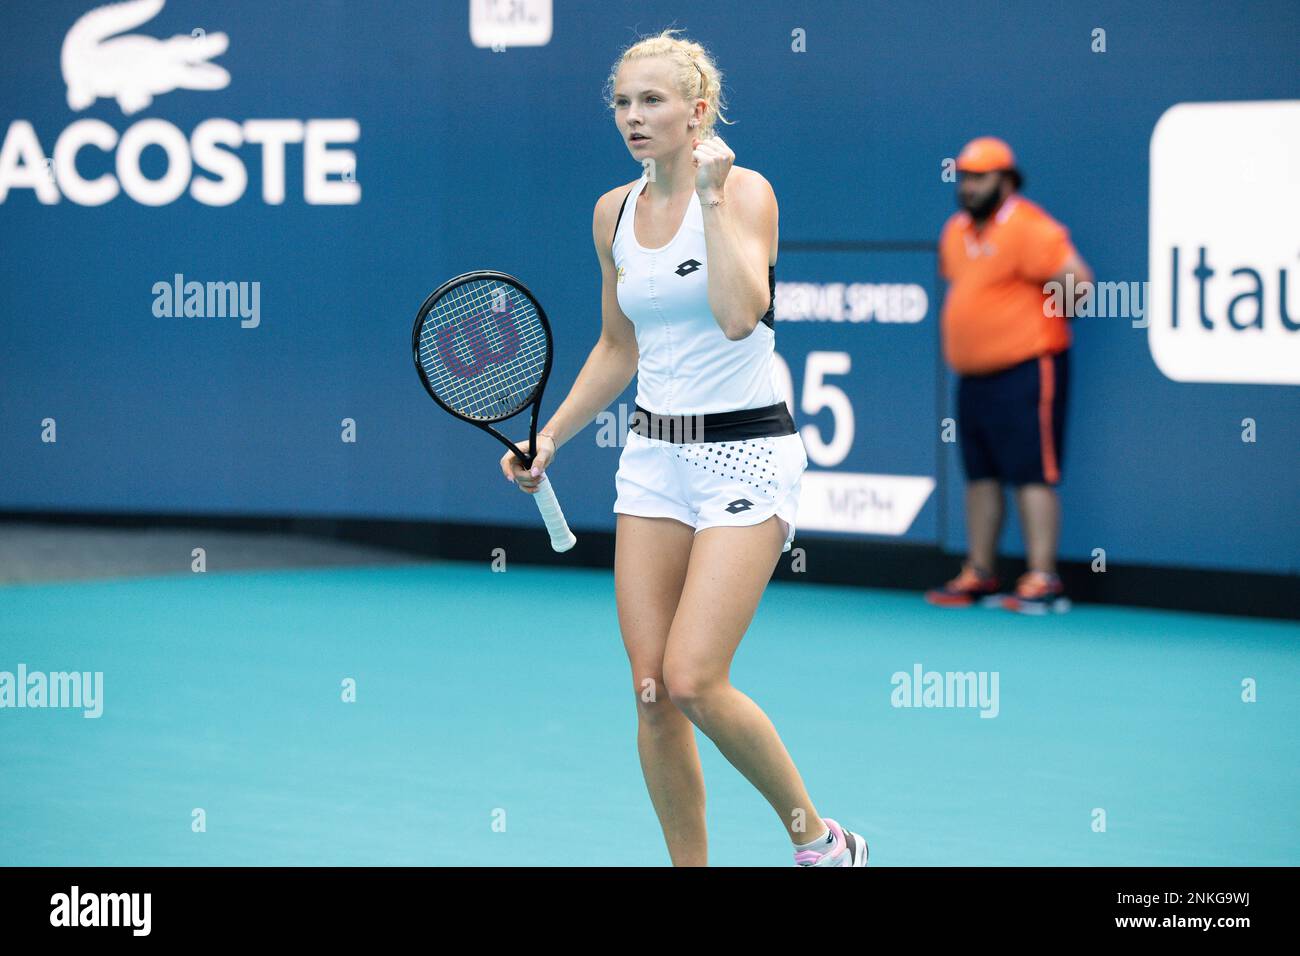 Katerina Siniakova of the Czech Republic during the Miami Open Tennis tournament on Thursday, March 24, 2022 in Miami Gardens, Fla